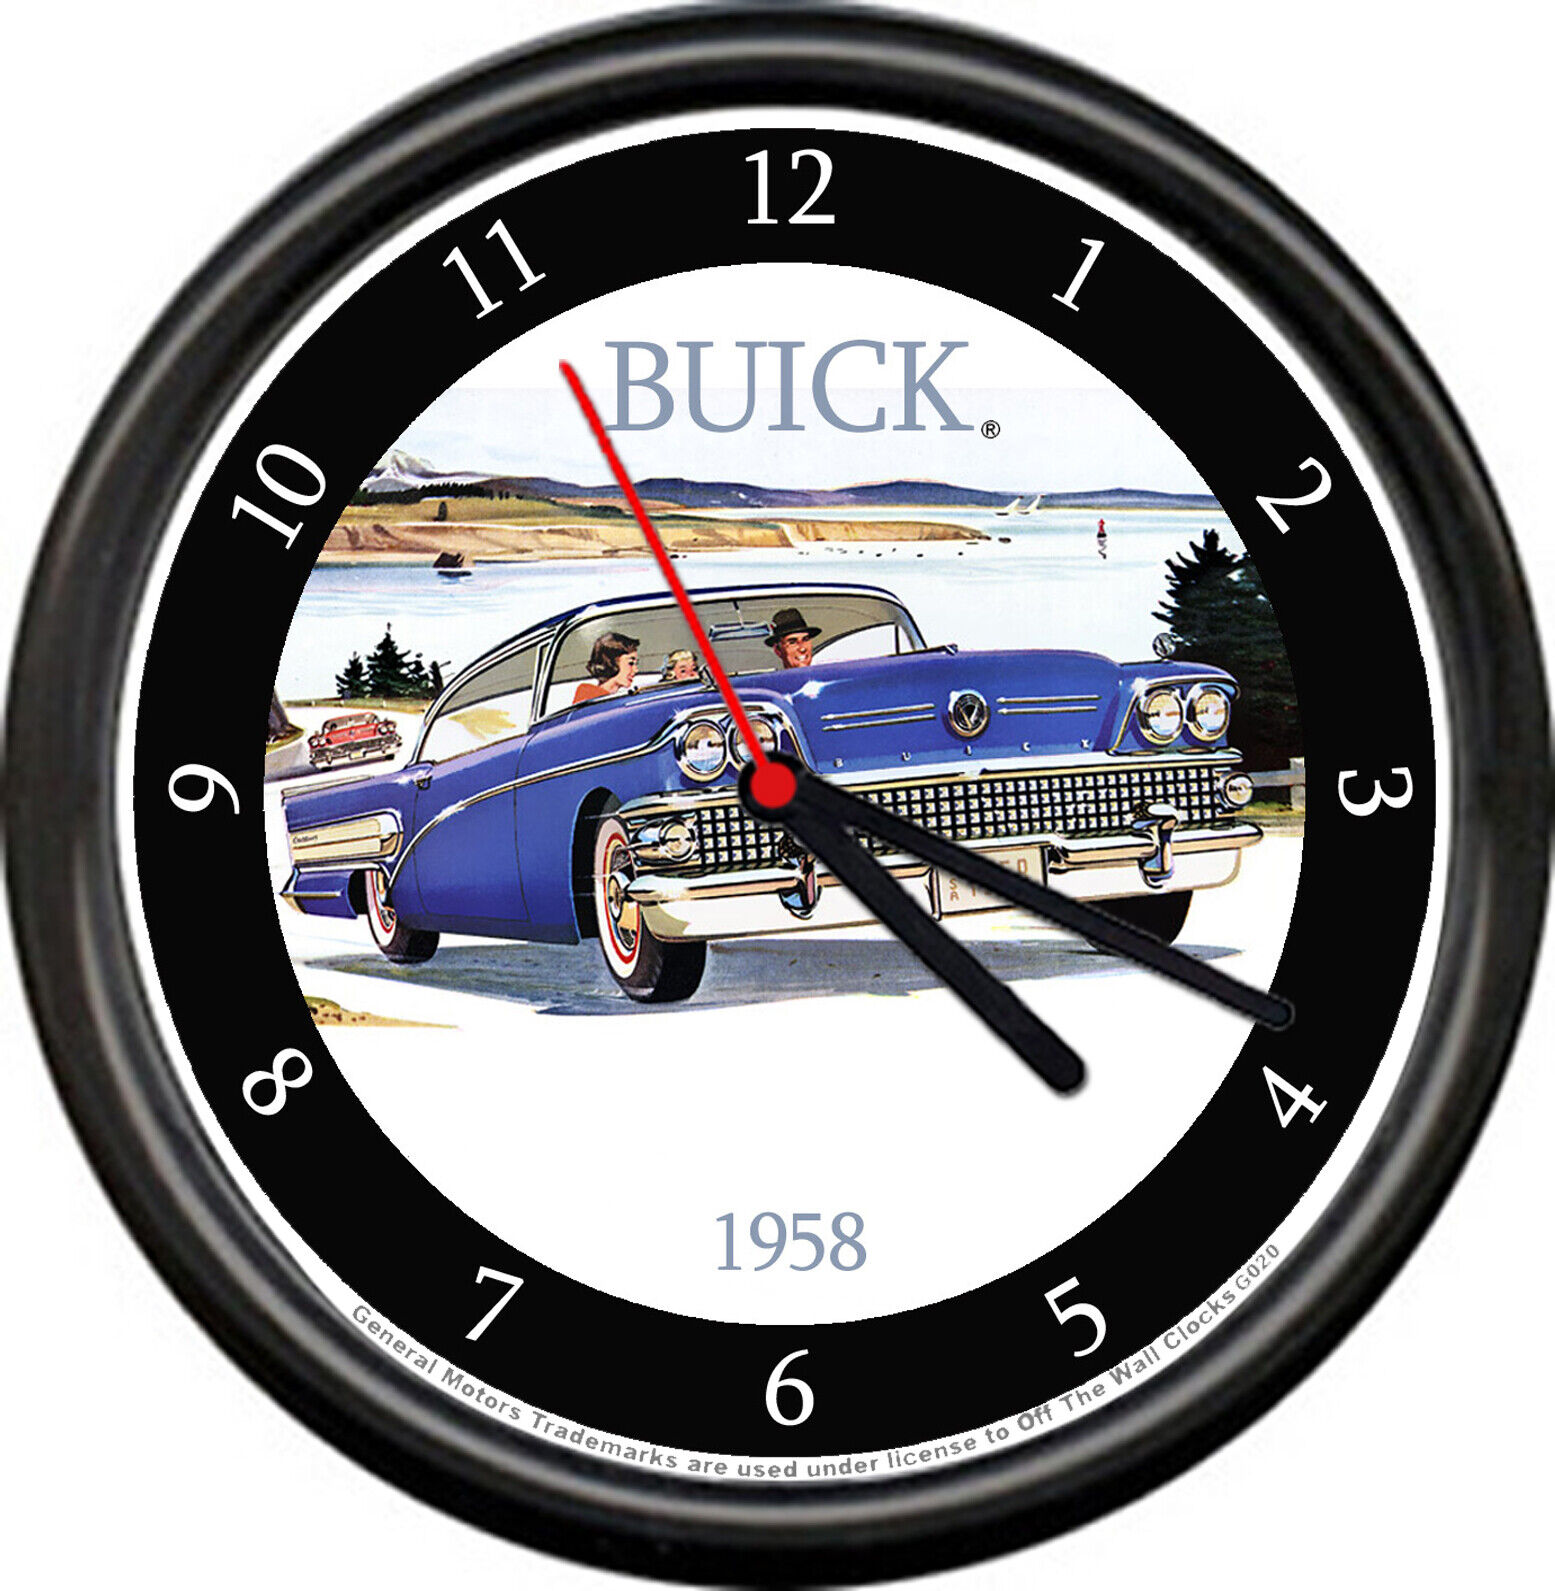 Licensed 1958 Buick 2 Door Sedan Vintage Blue General Motors Sign Wall Clock